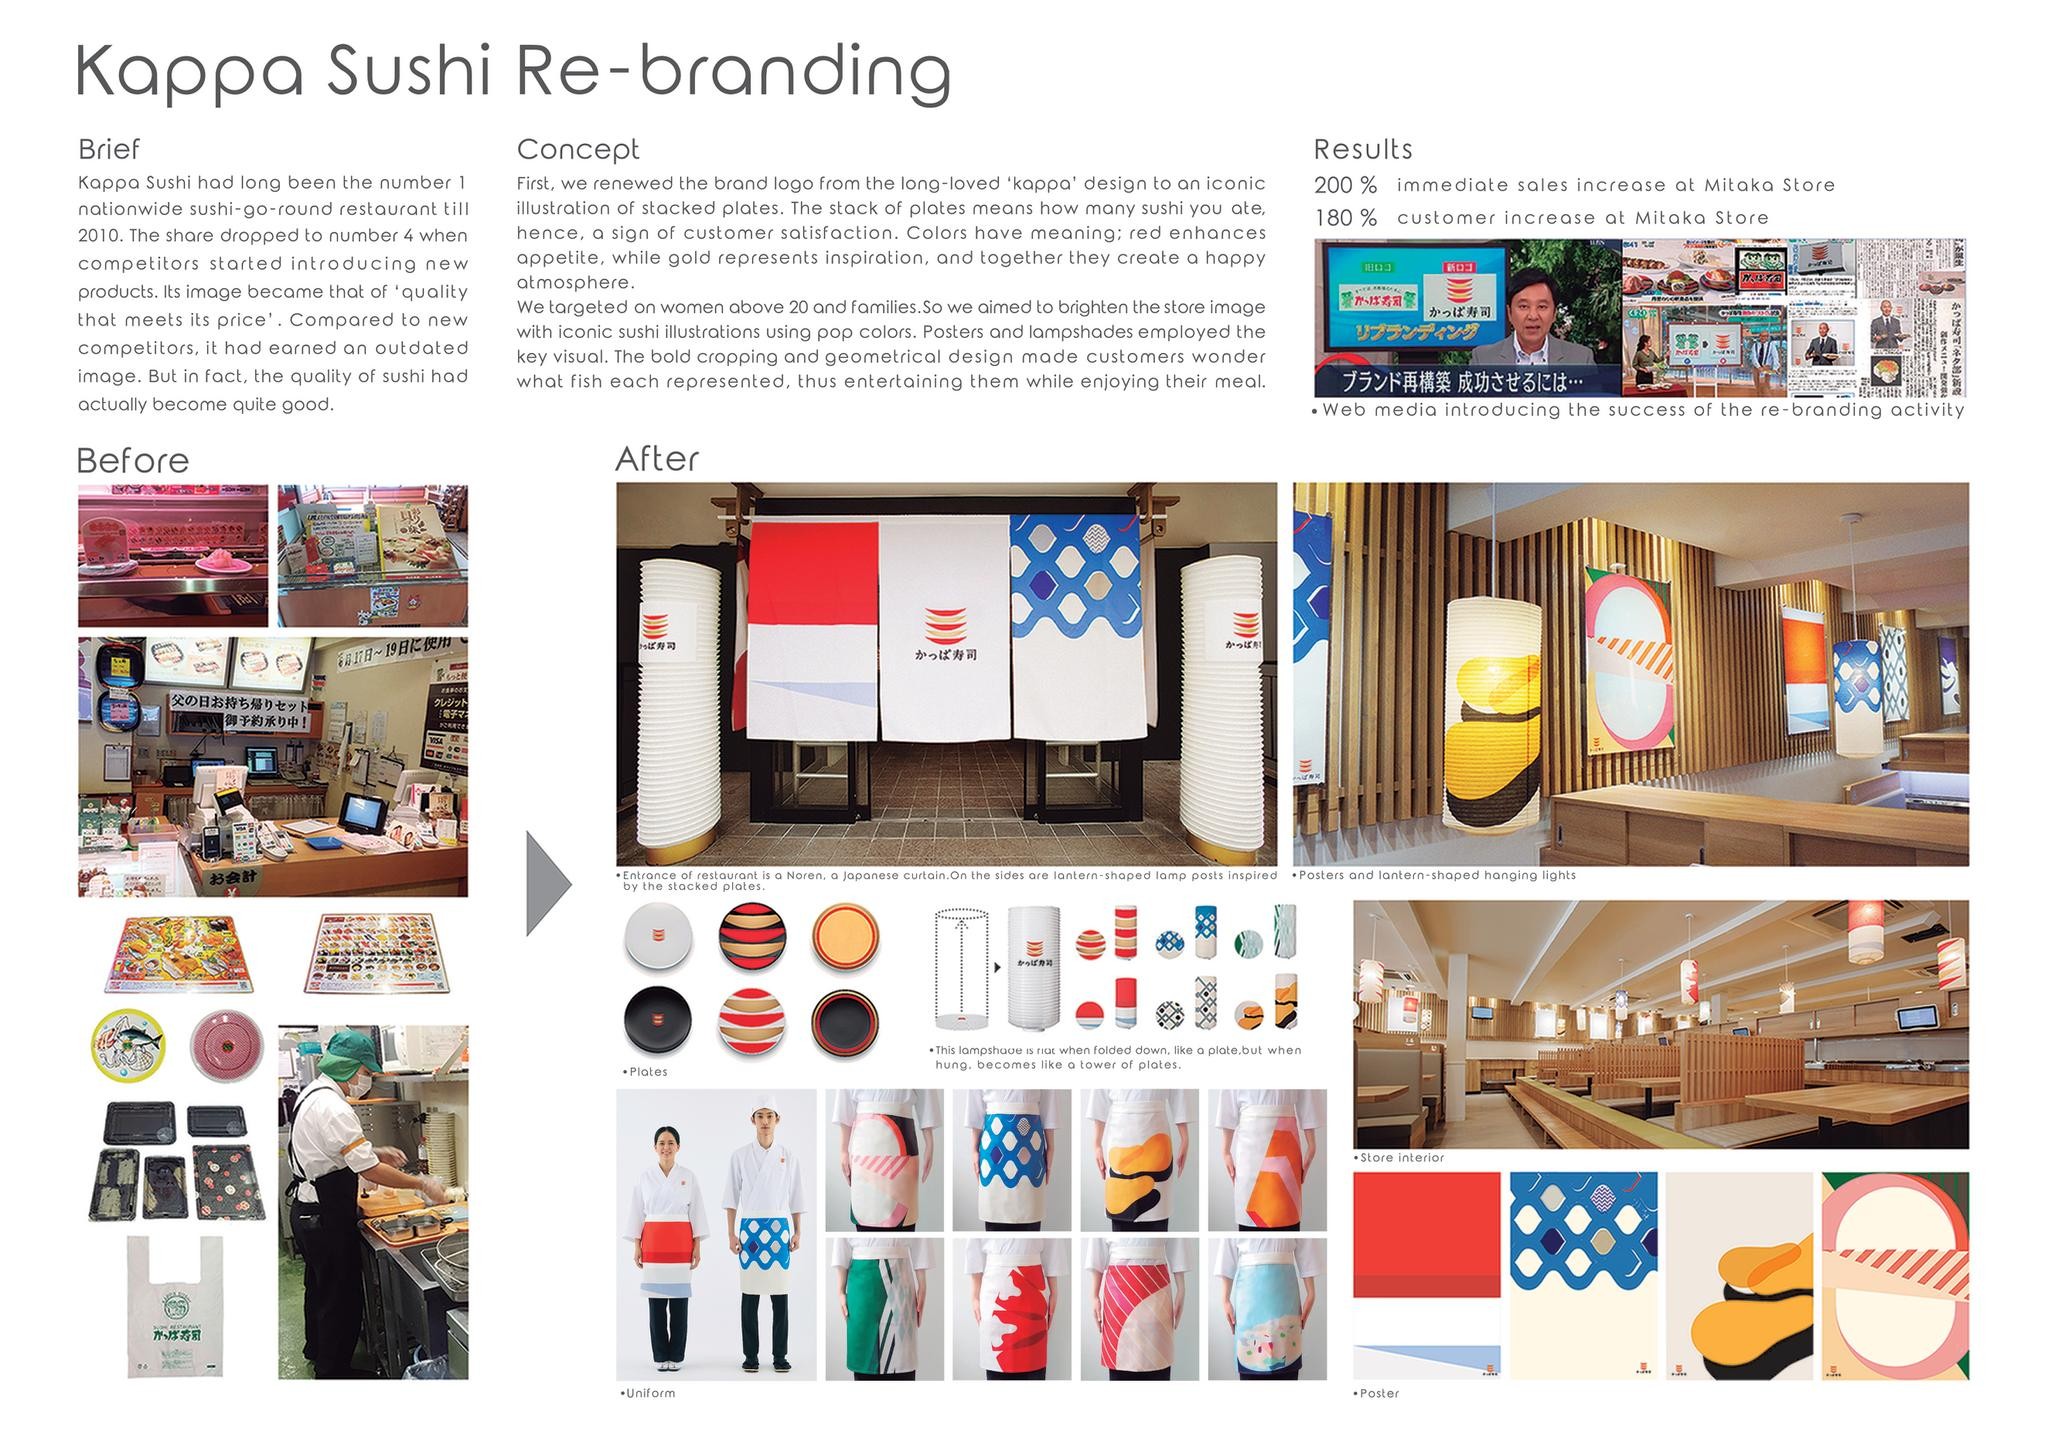 Kappa Sushi Re-branding